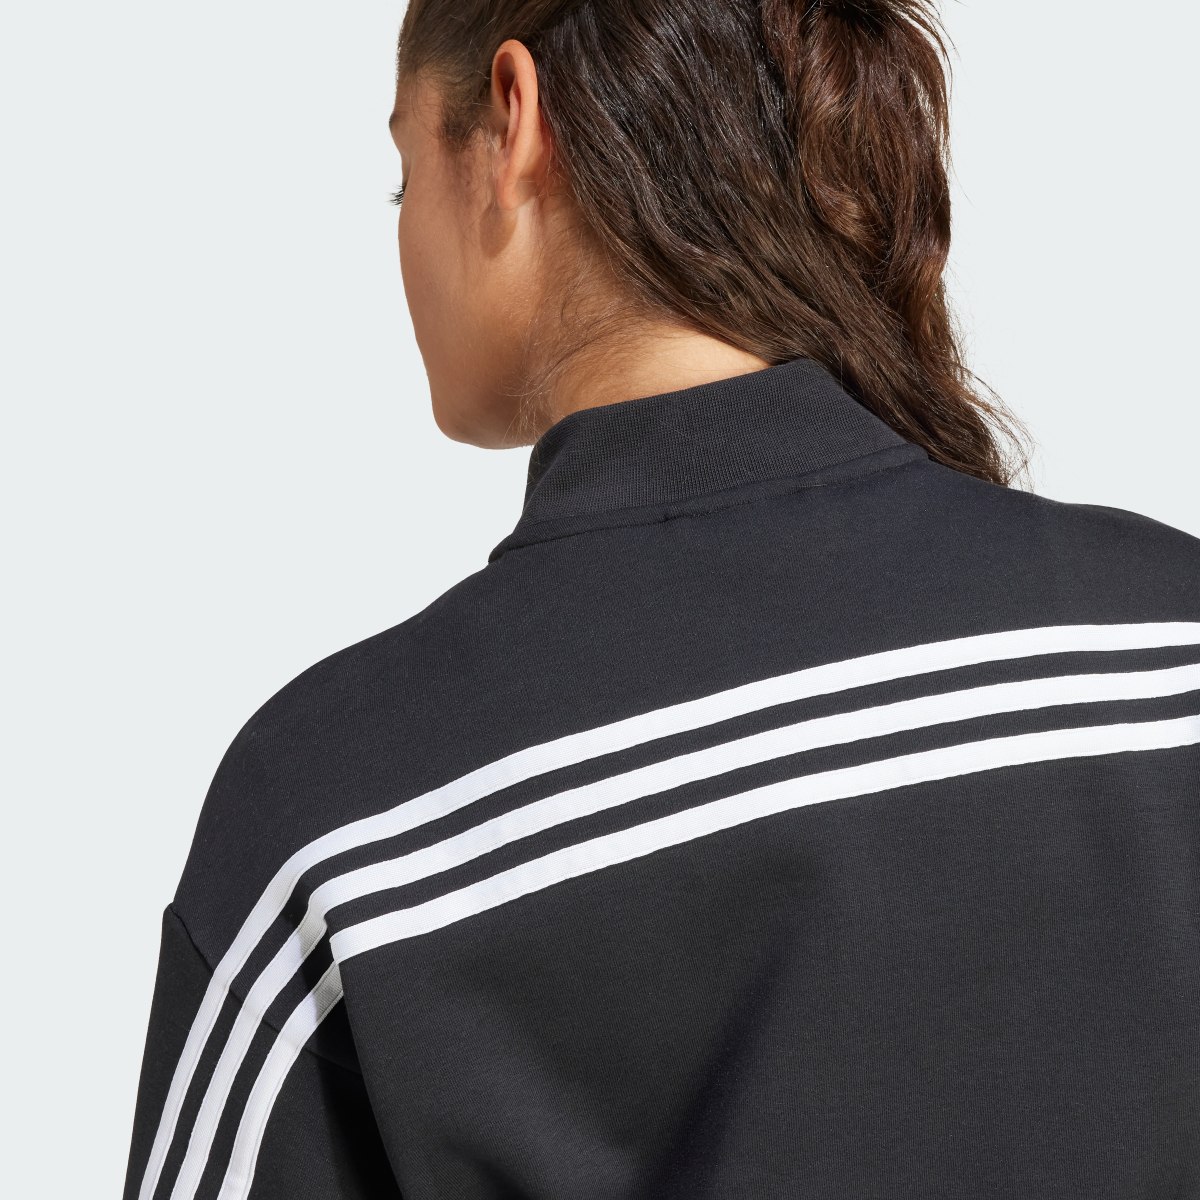 Adidas Future Icons 3-Stripes Bomber Jacket. 7